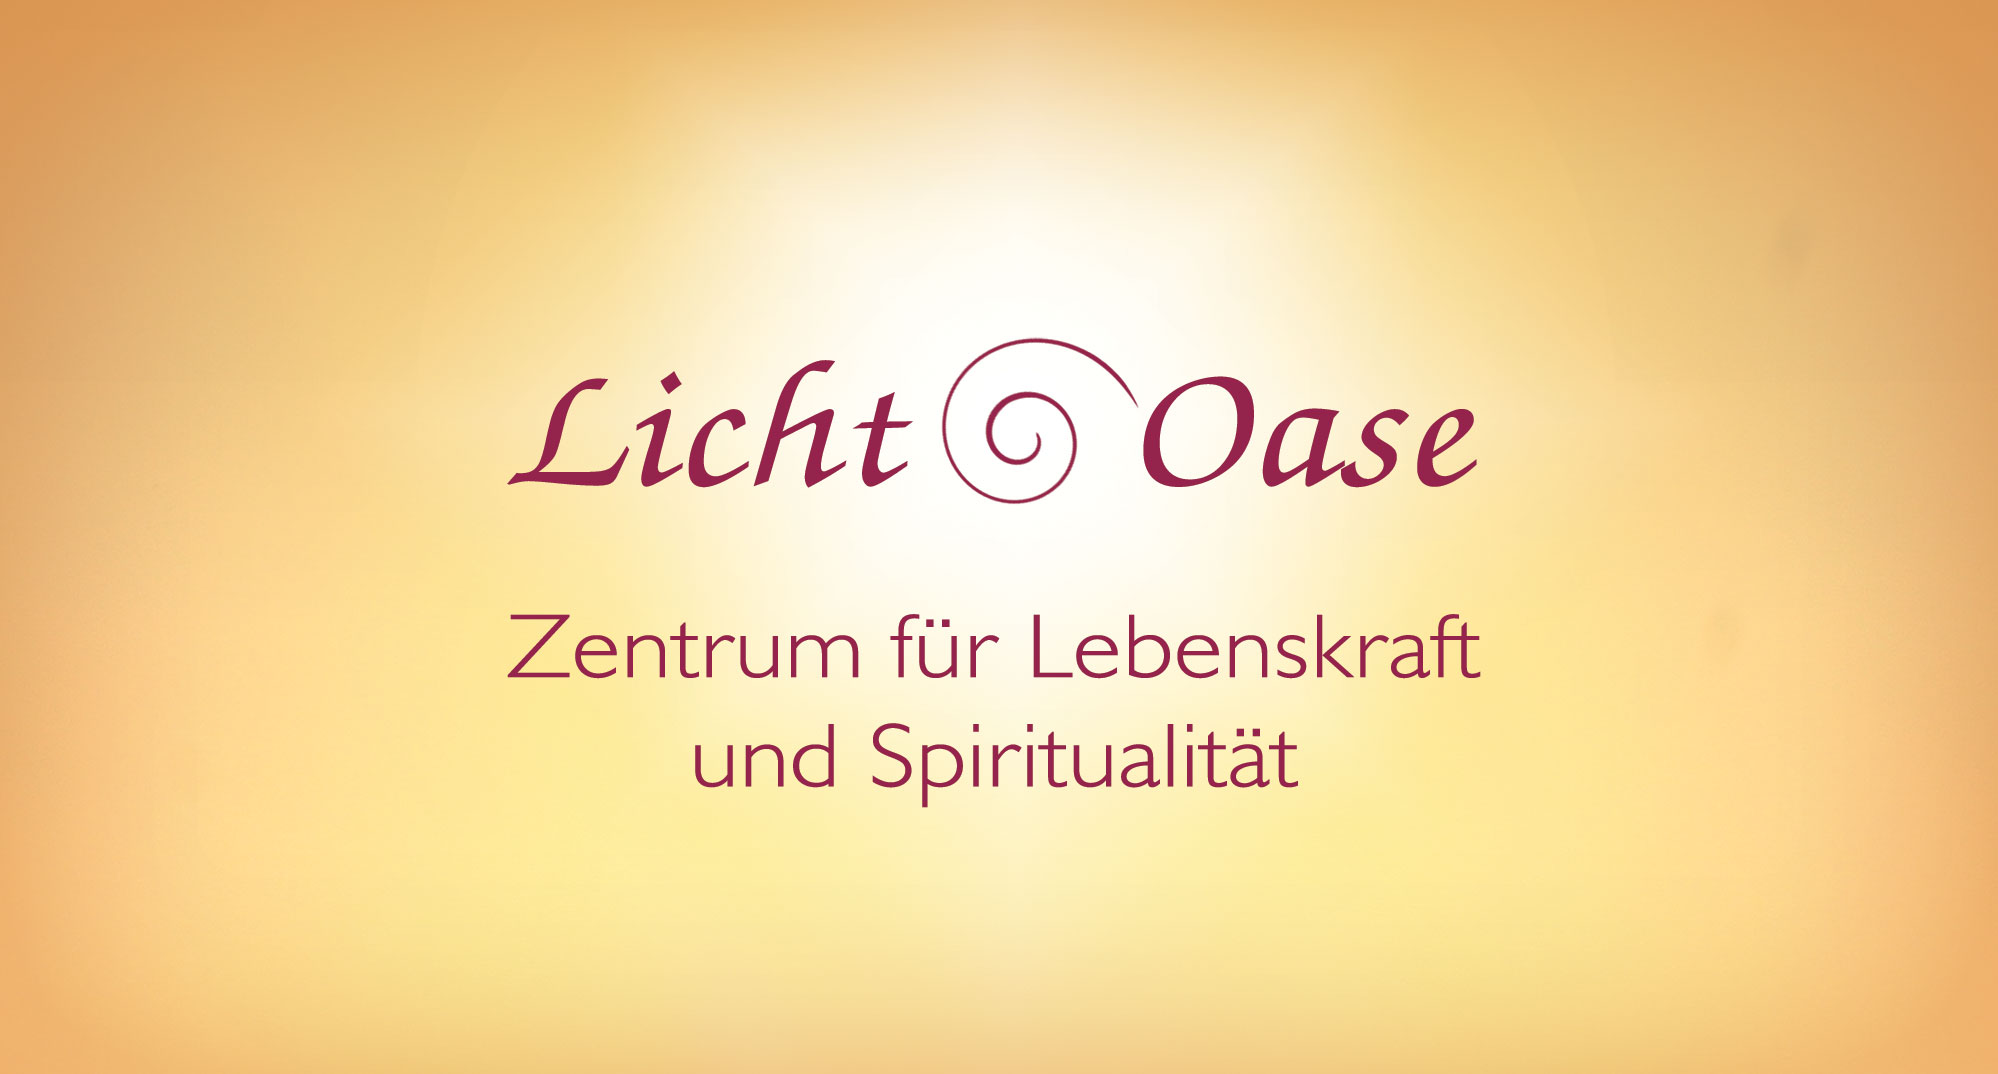 Die Lichtoase - das spirituelle Zentrum am Rande Berlins